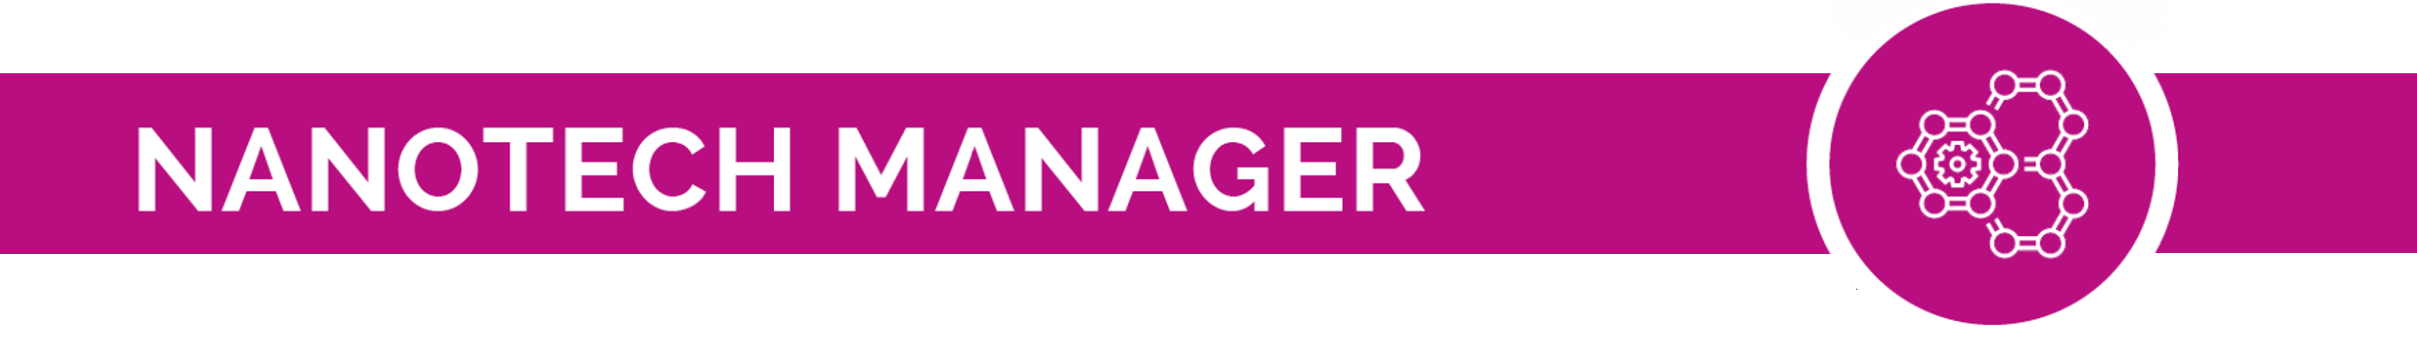 nanotech manager